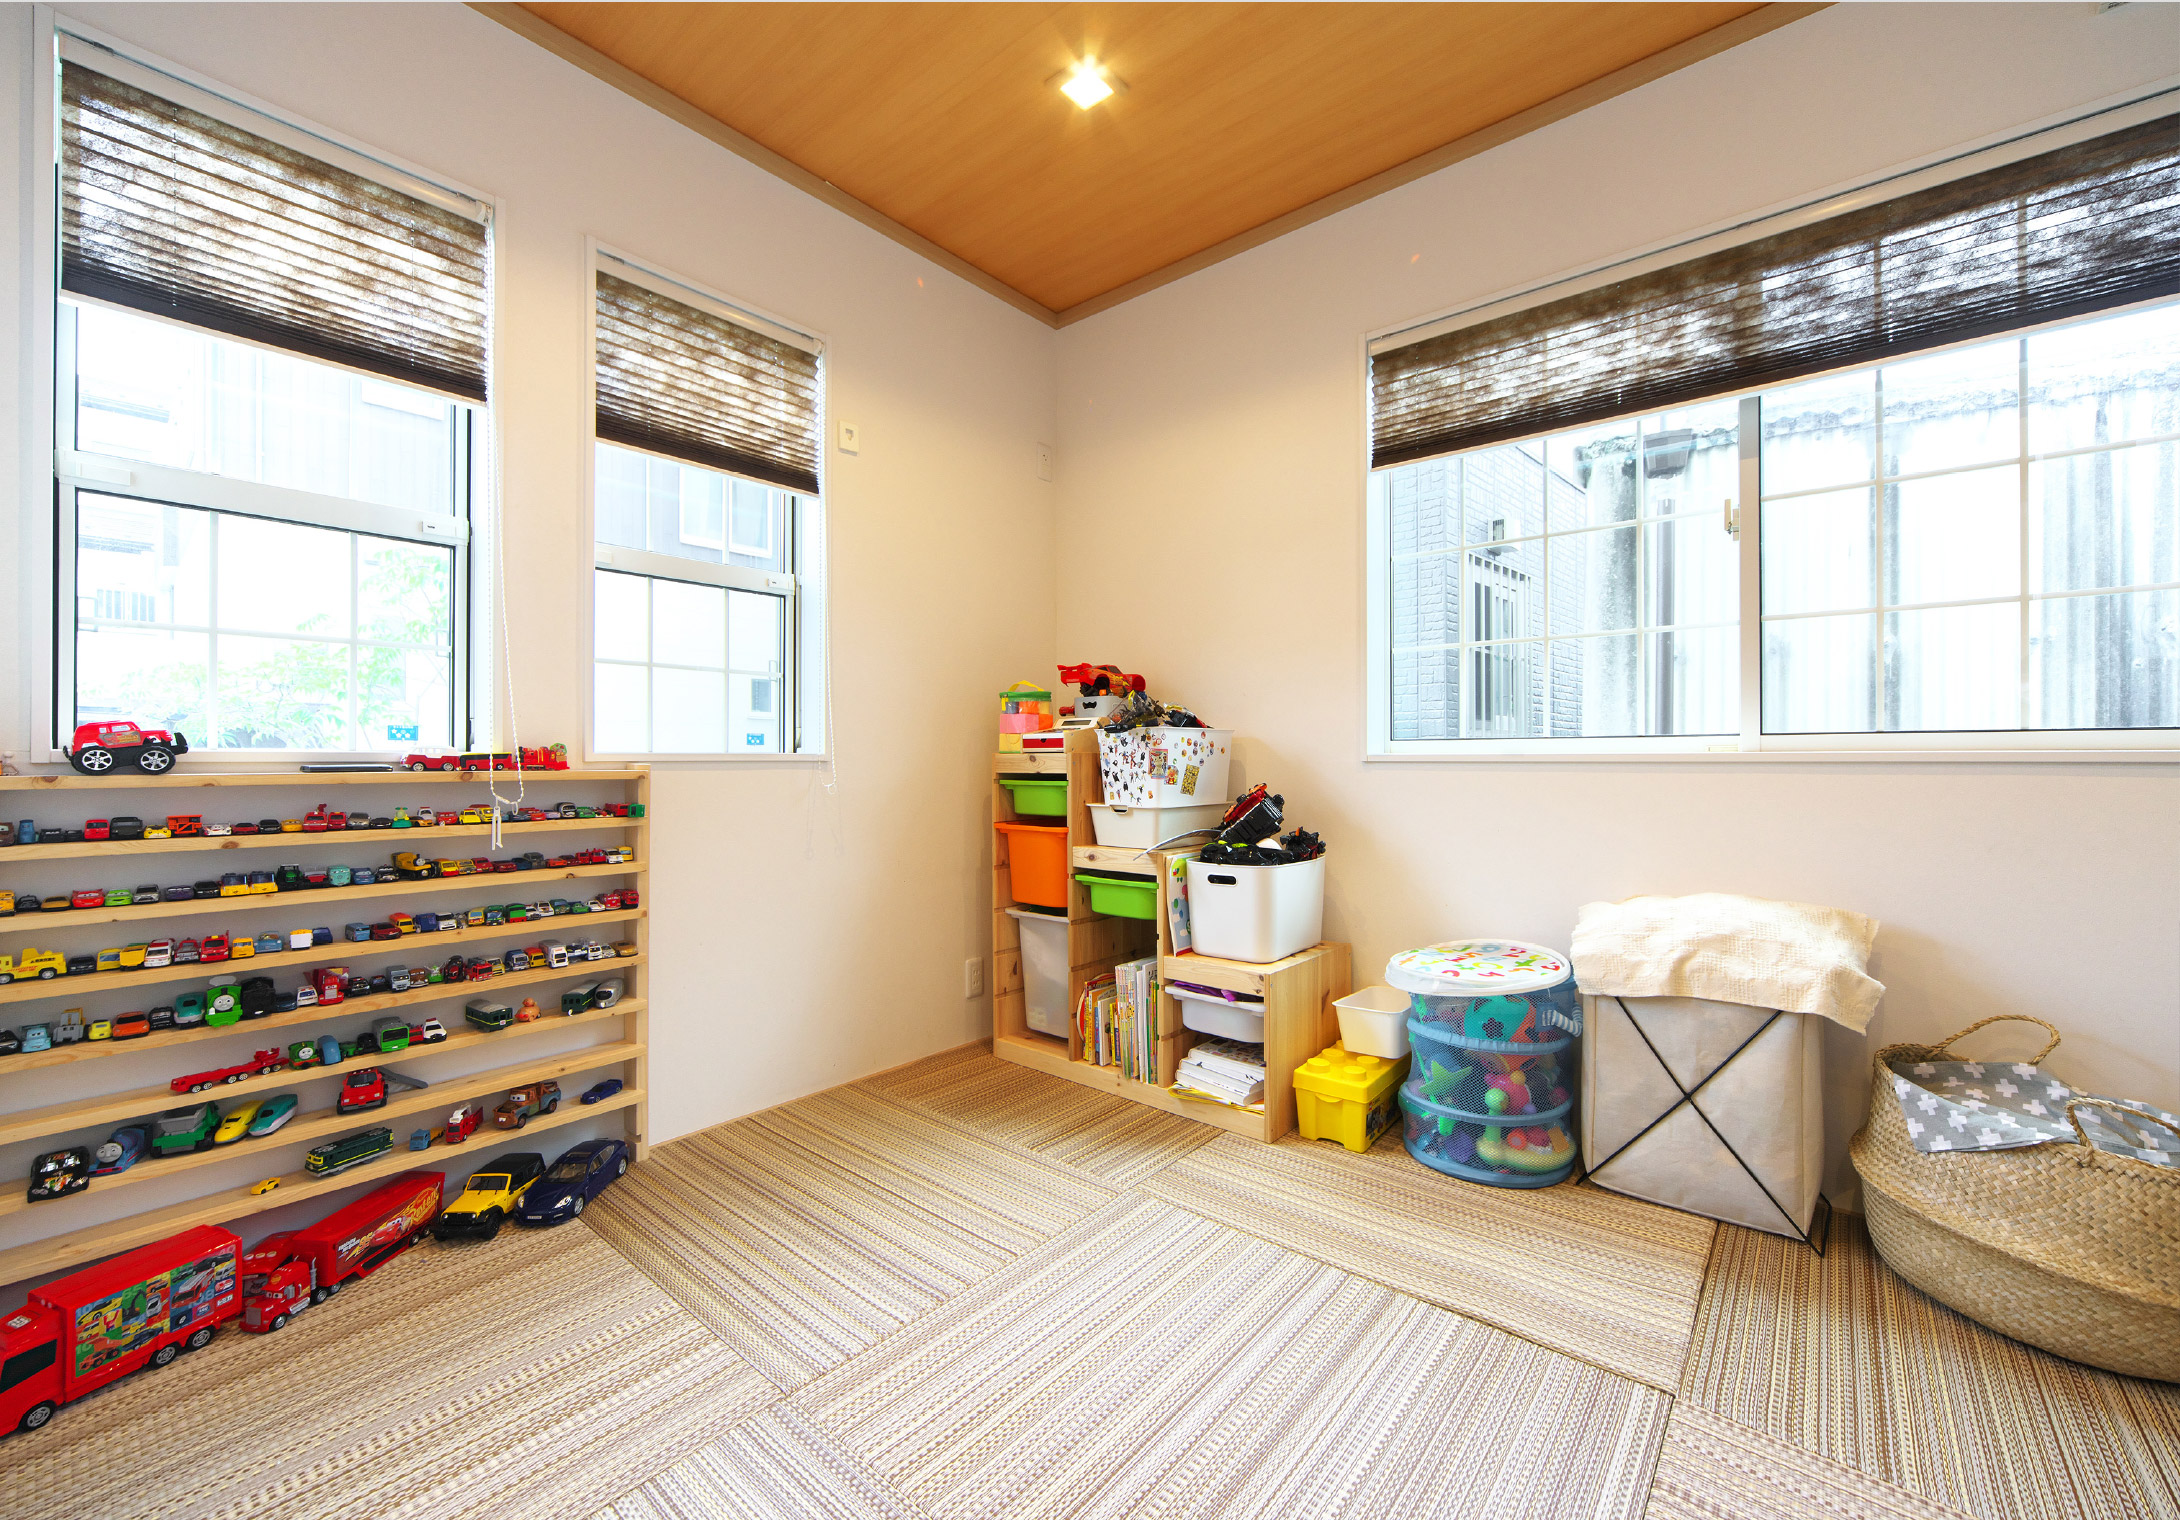 「畳の部屋も欲しかった」という希望で設けたモダンな和室。子どもの昼寝や遊び場として使っている